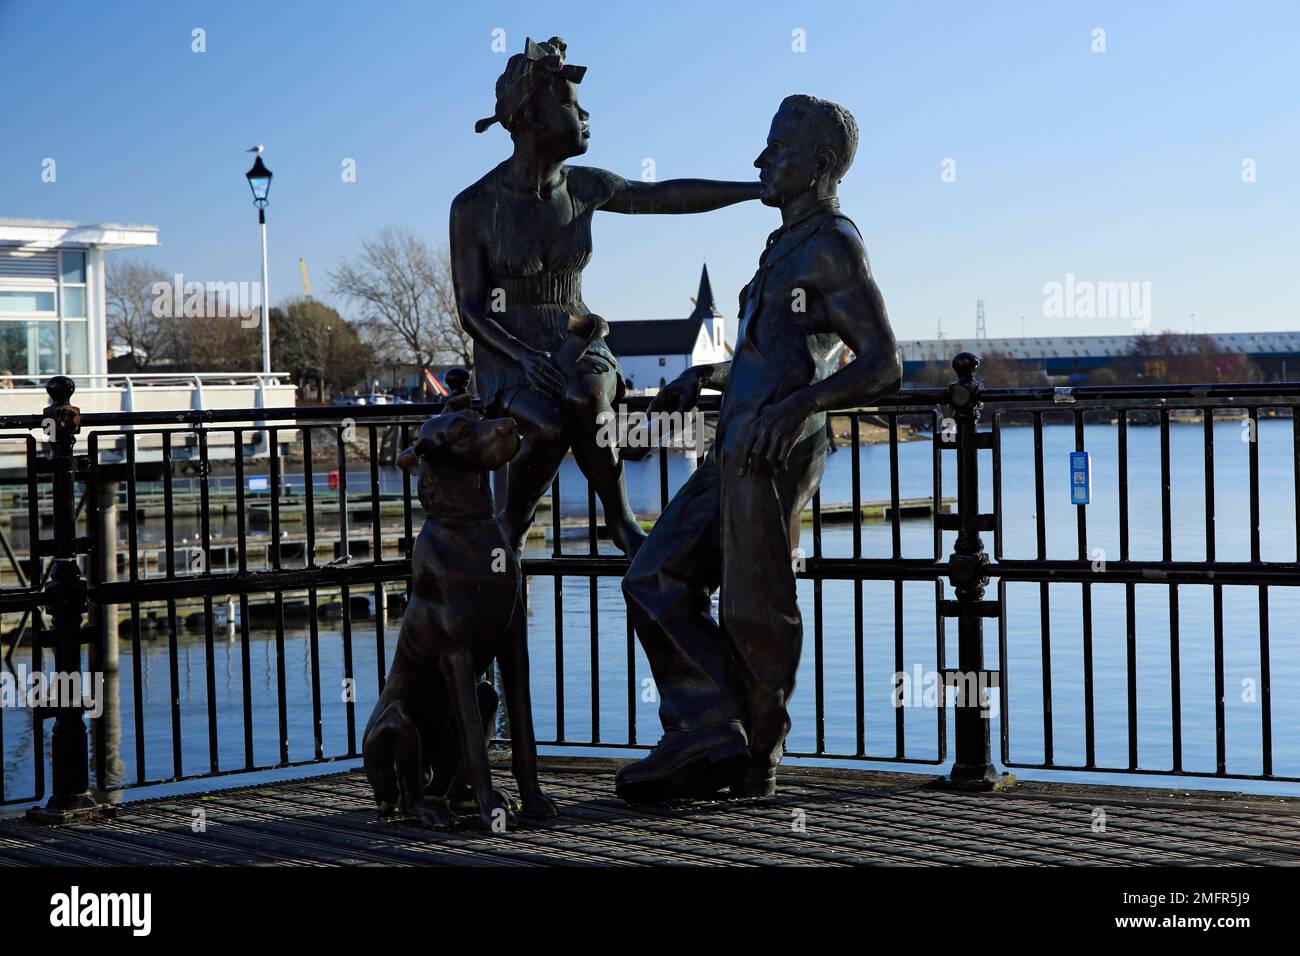 Les gens comme nous la sculpture, la baie de Cardiff, Cardiff, Pays de Galles, Royaume-Uni. Banque D'Images